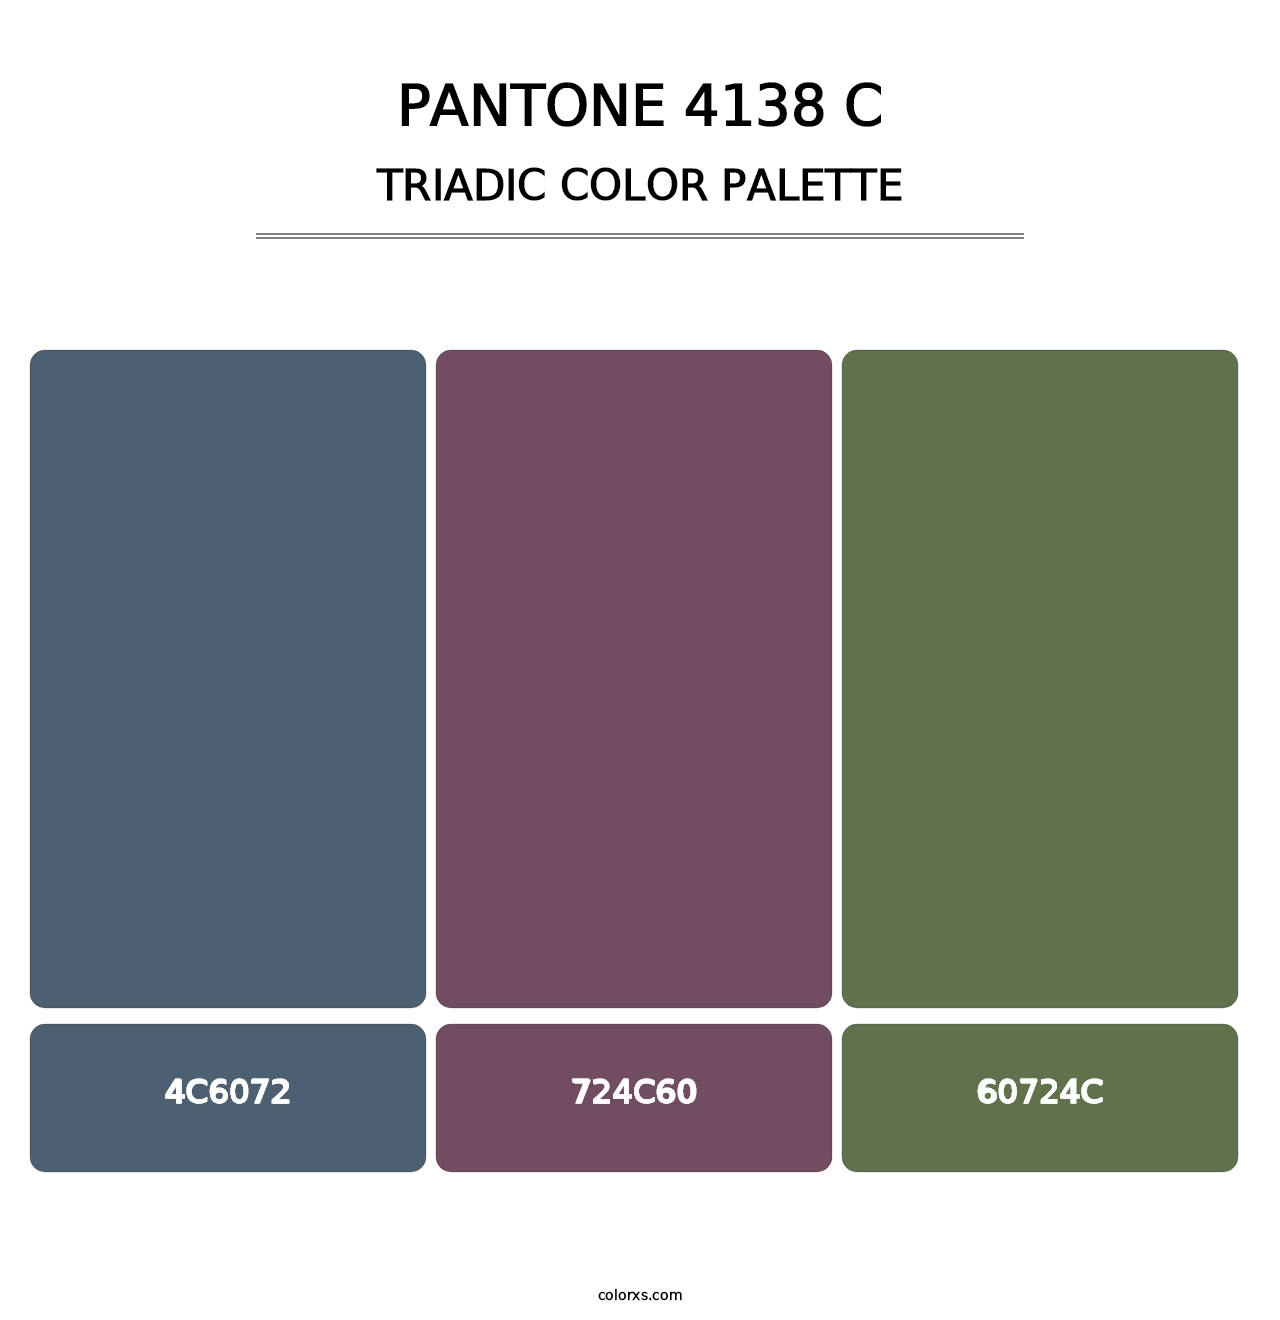 PANTONE 4138 C - Triadic Color Palette